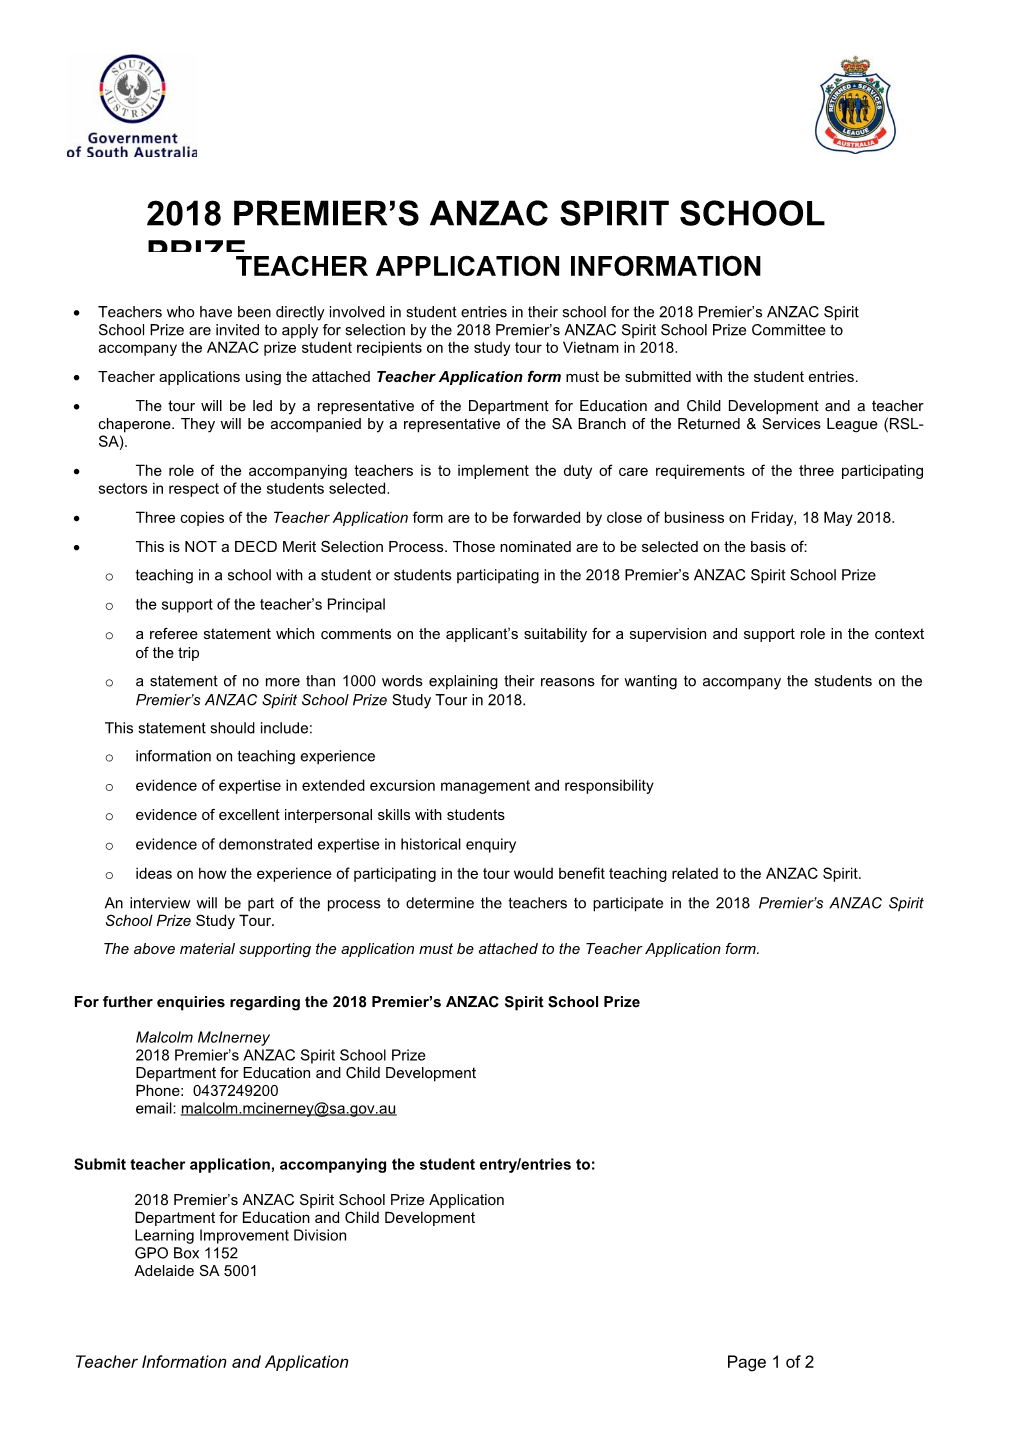 Teacher Application Information